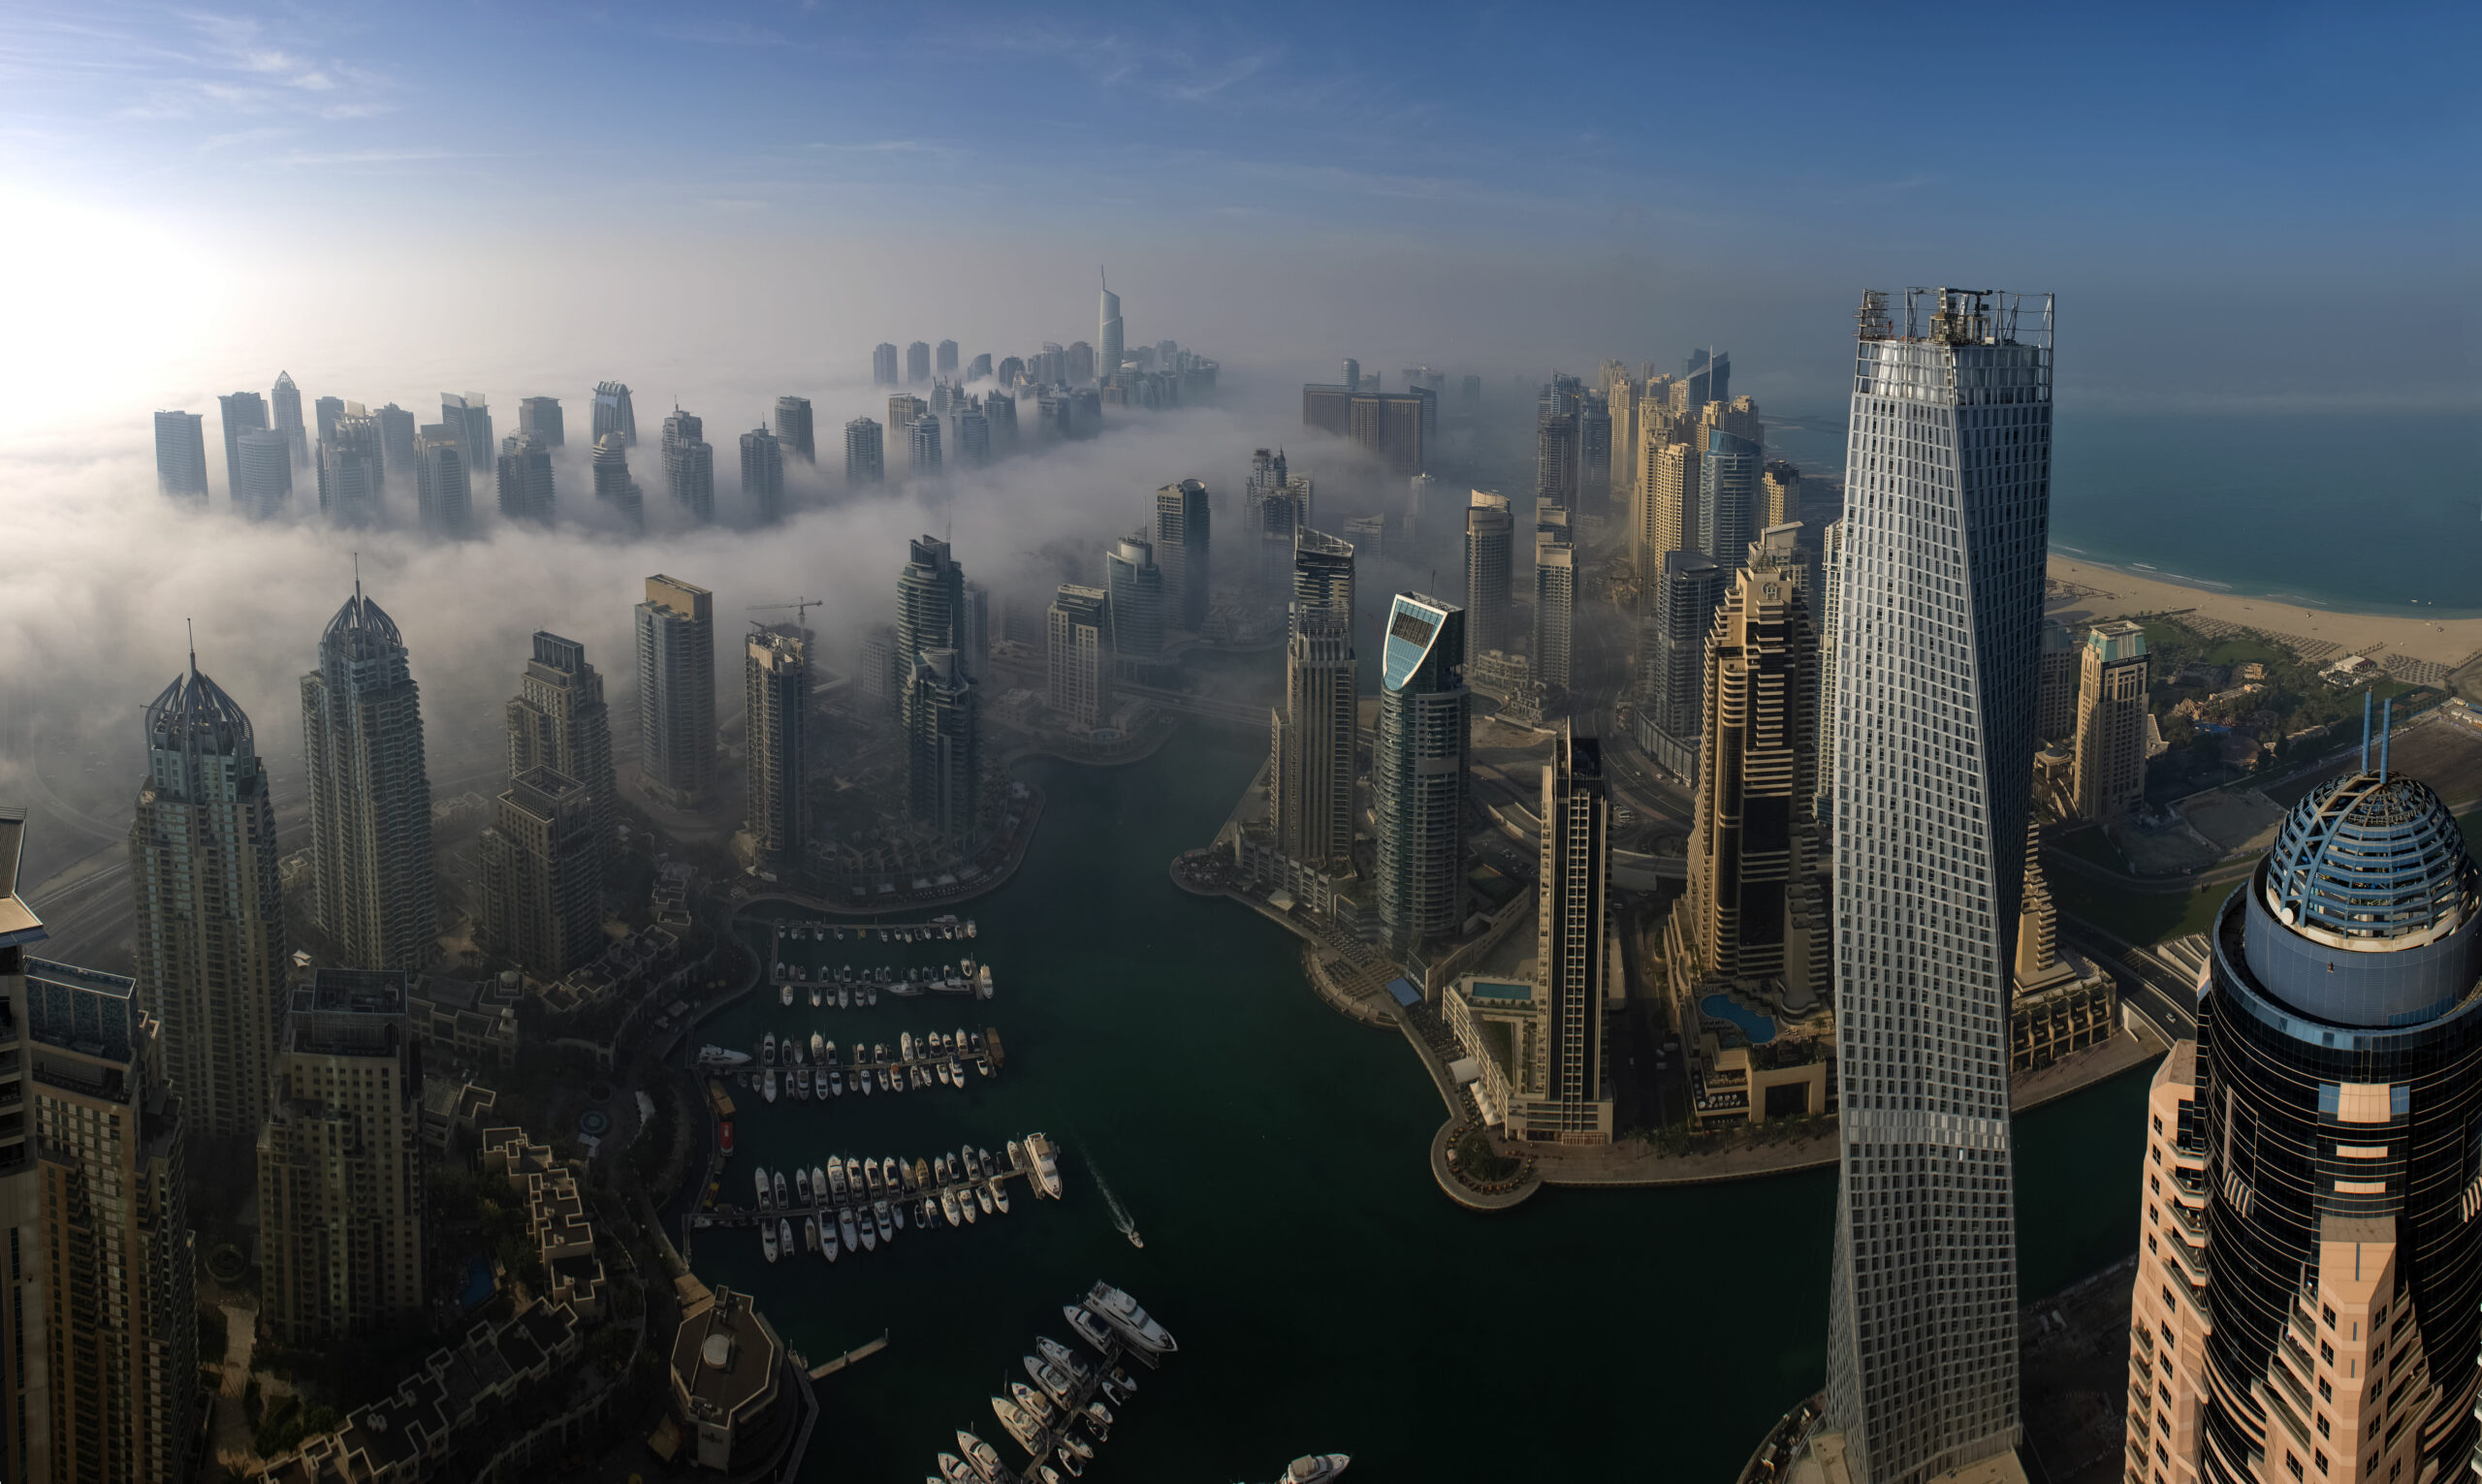 De Russische vraag naar vastgoed in Dubai vertraagt, maar die van China trekt aan, zegt DAMAC-voorzitter